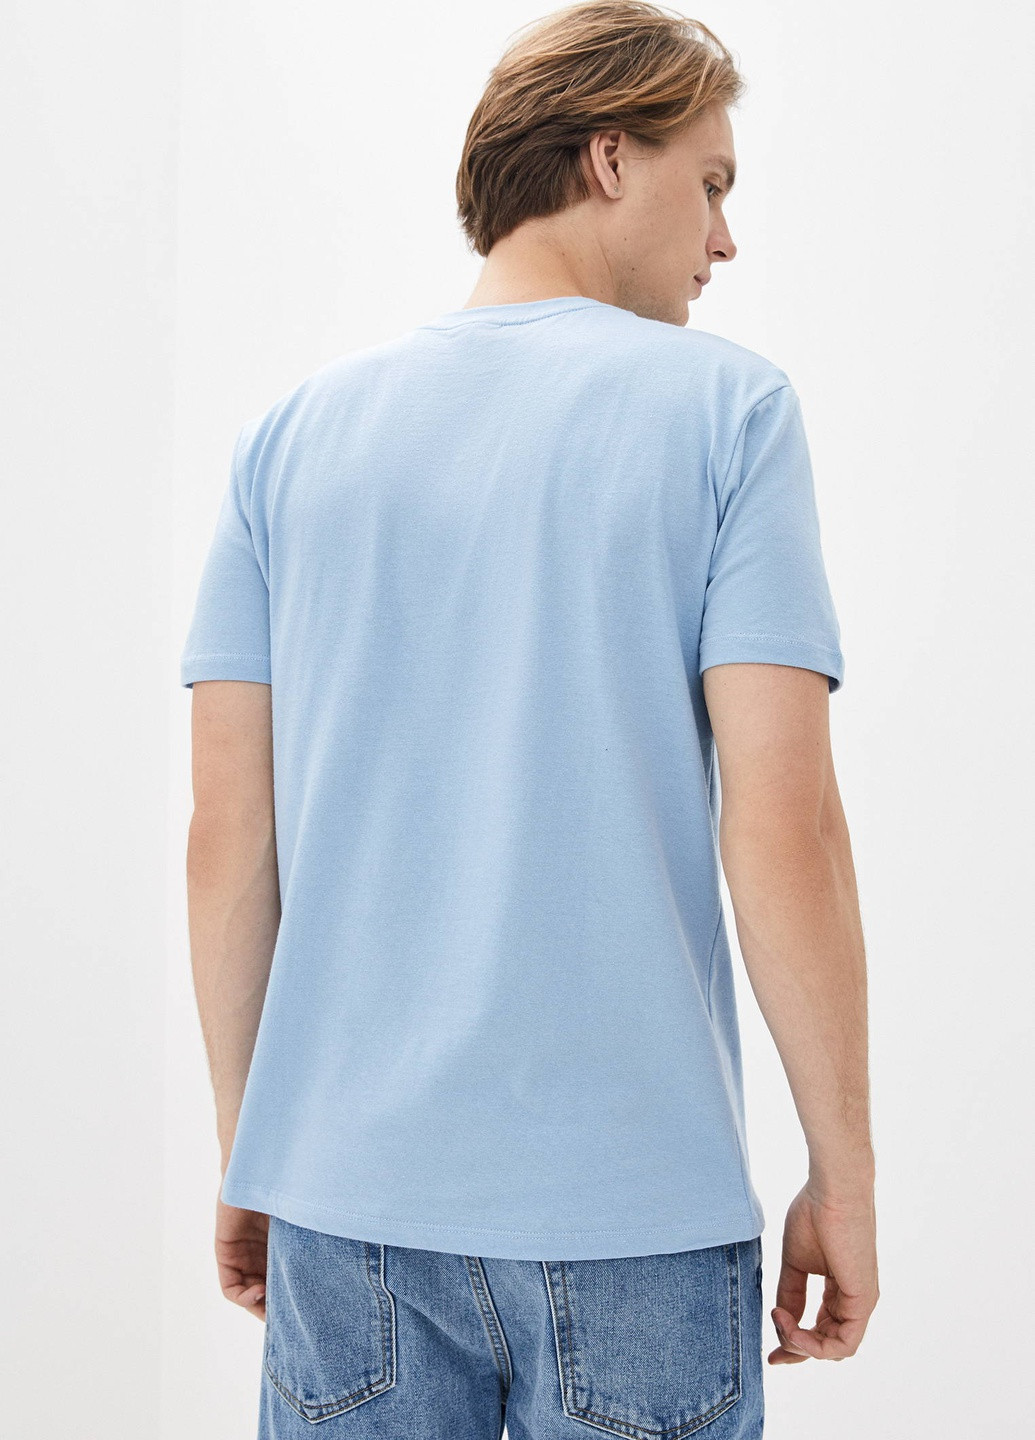 Голубая футболка мужская базовая с коротким рукавом Роза